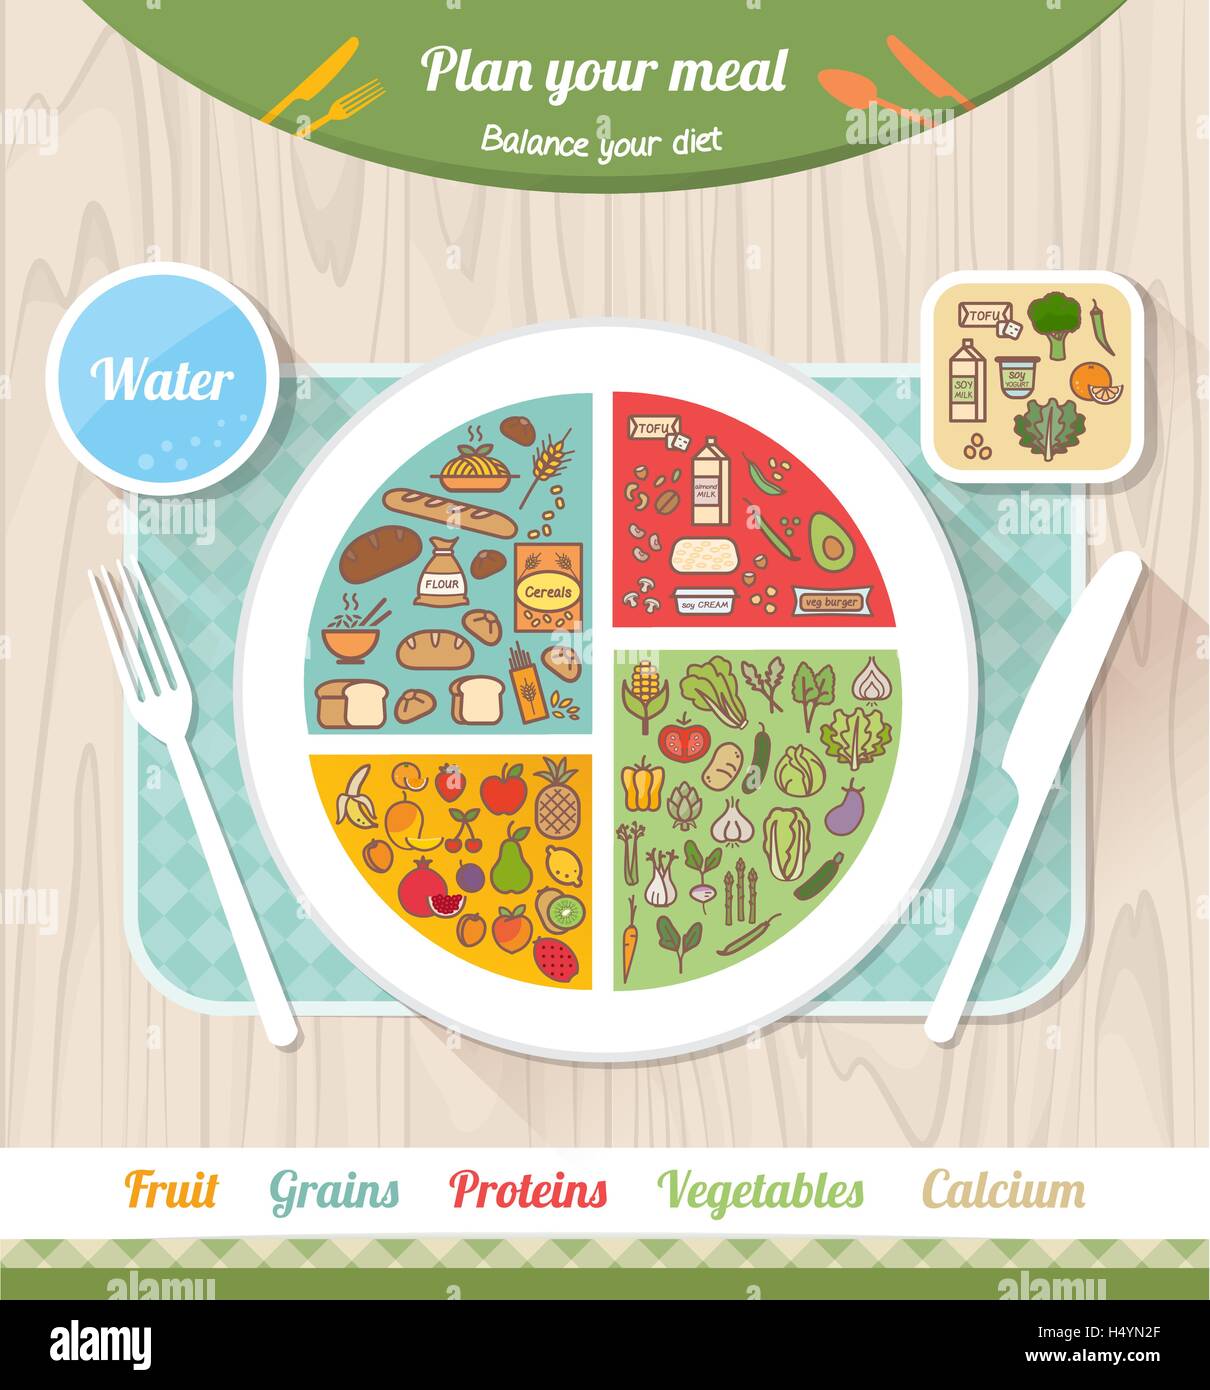 Saine alimentation végétalienne et eatwell plate concept, icônes et des portions de nourriture sur un diagramme circulaire Illustration de Vecteur